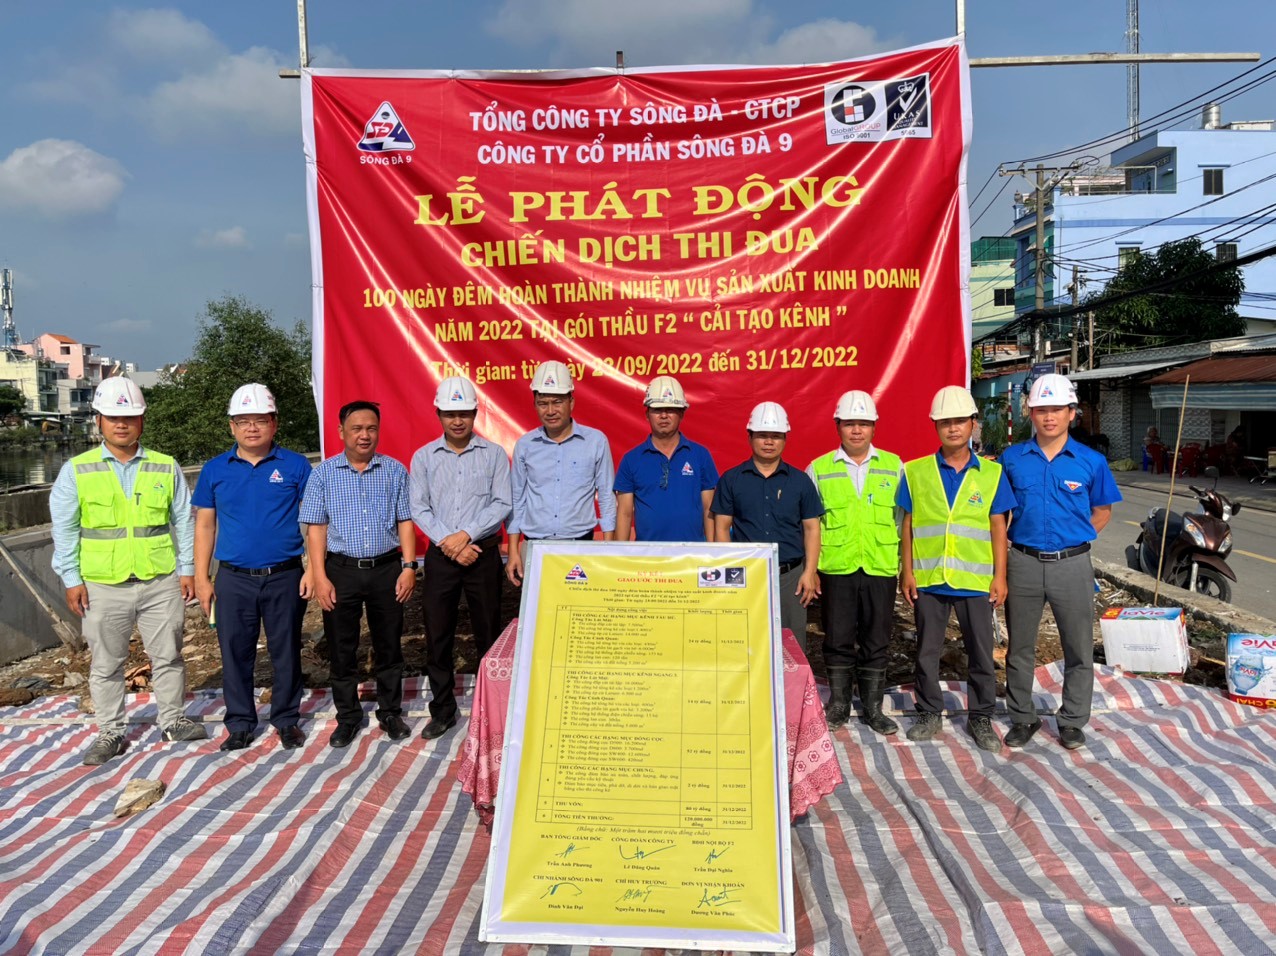 Công ty cổ phần Sông Đà 9 phát động chiến dịch thi đua “100 ngày đêm hoàn thành nhiệm vụ sản xuất kinh doanh năm 2022 tại Gói thầu F2-Cải tạo kênh”, TP. Hồ Chí Minh